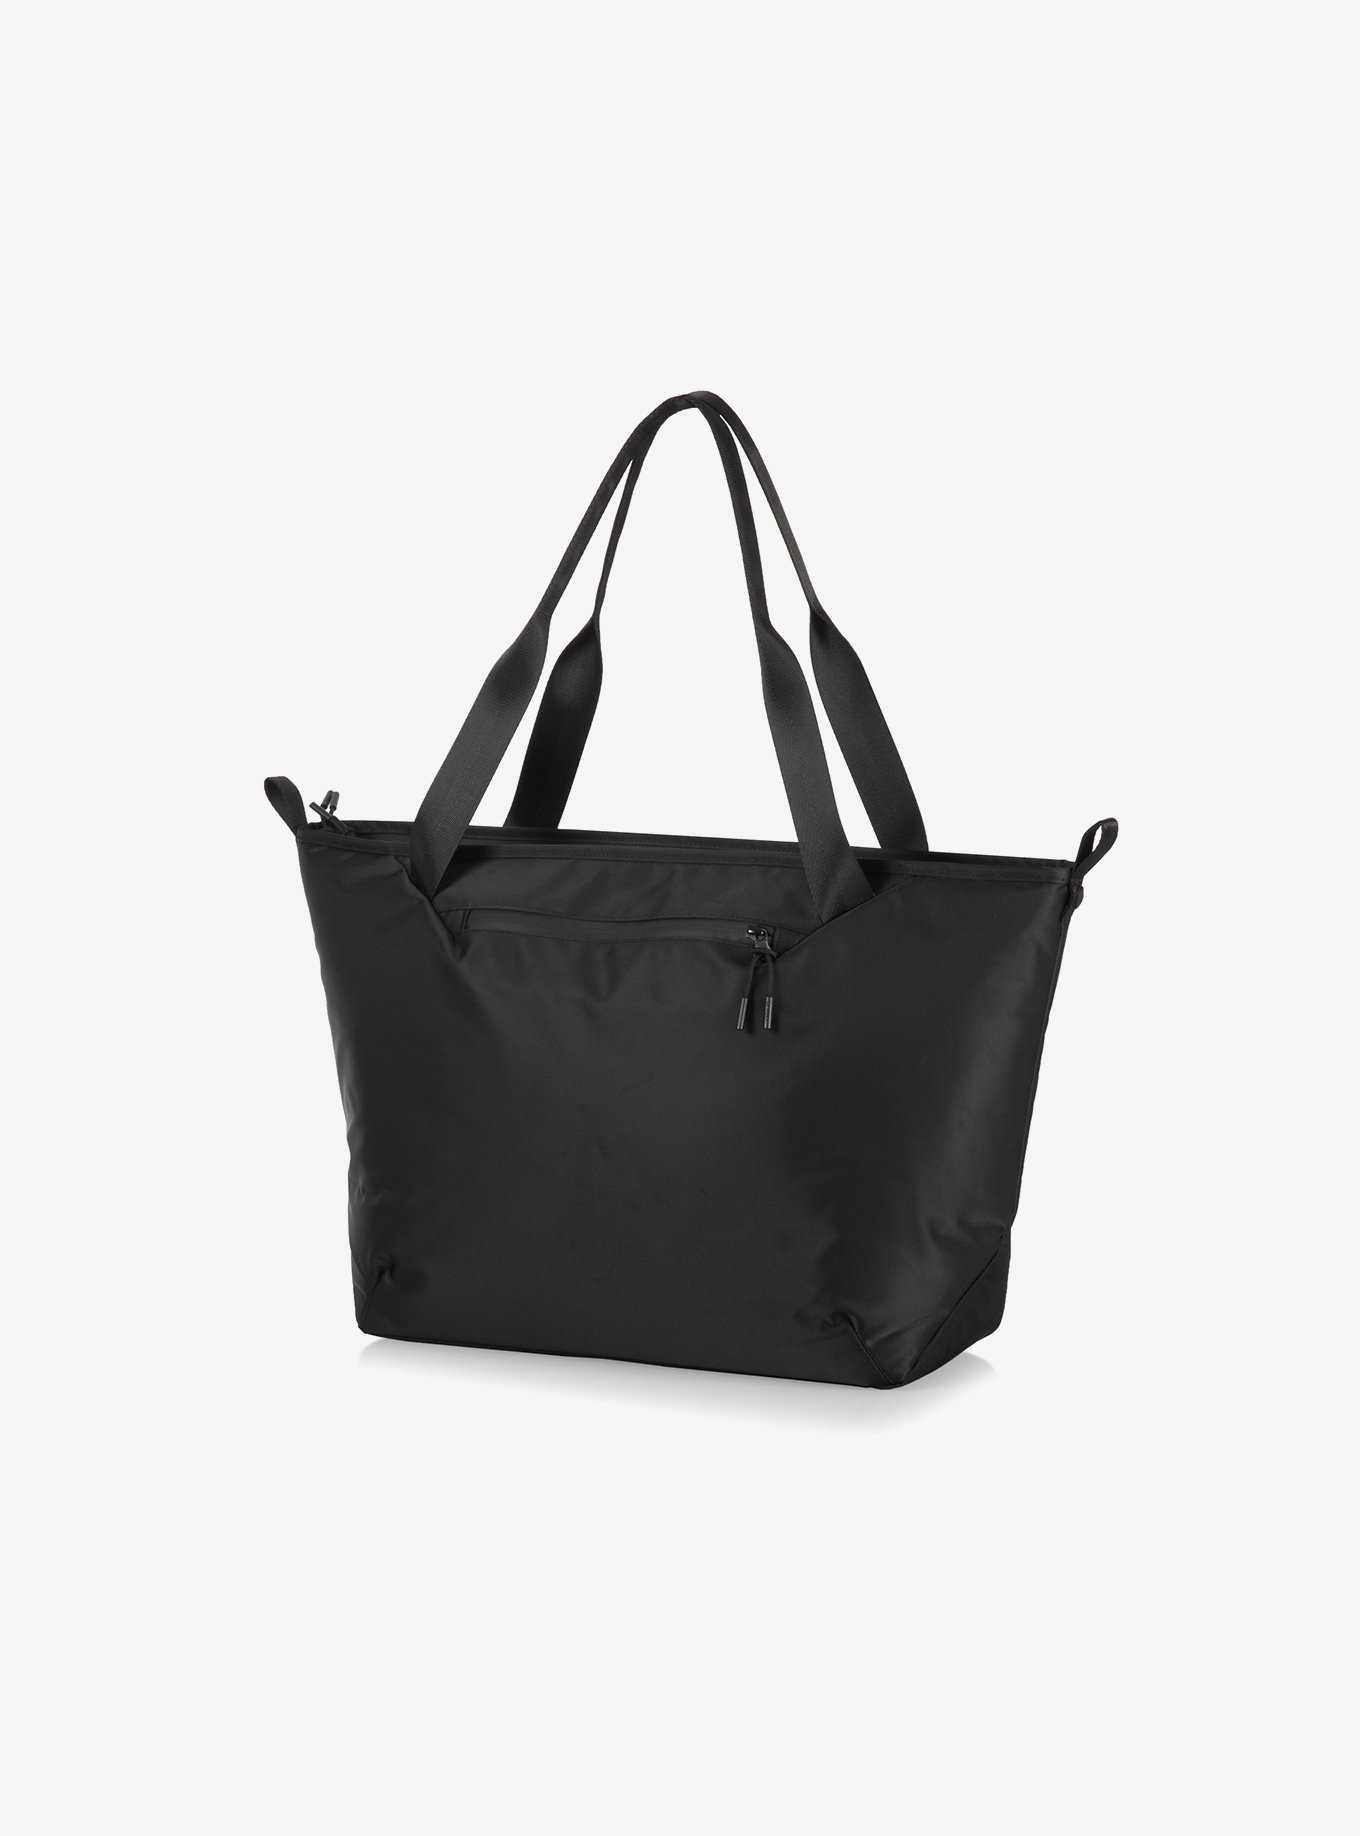 Tarana Carbon Black Cooler Bag Tote, , hi-res